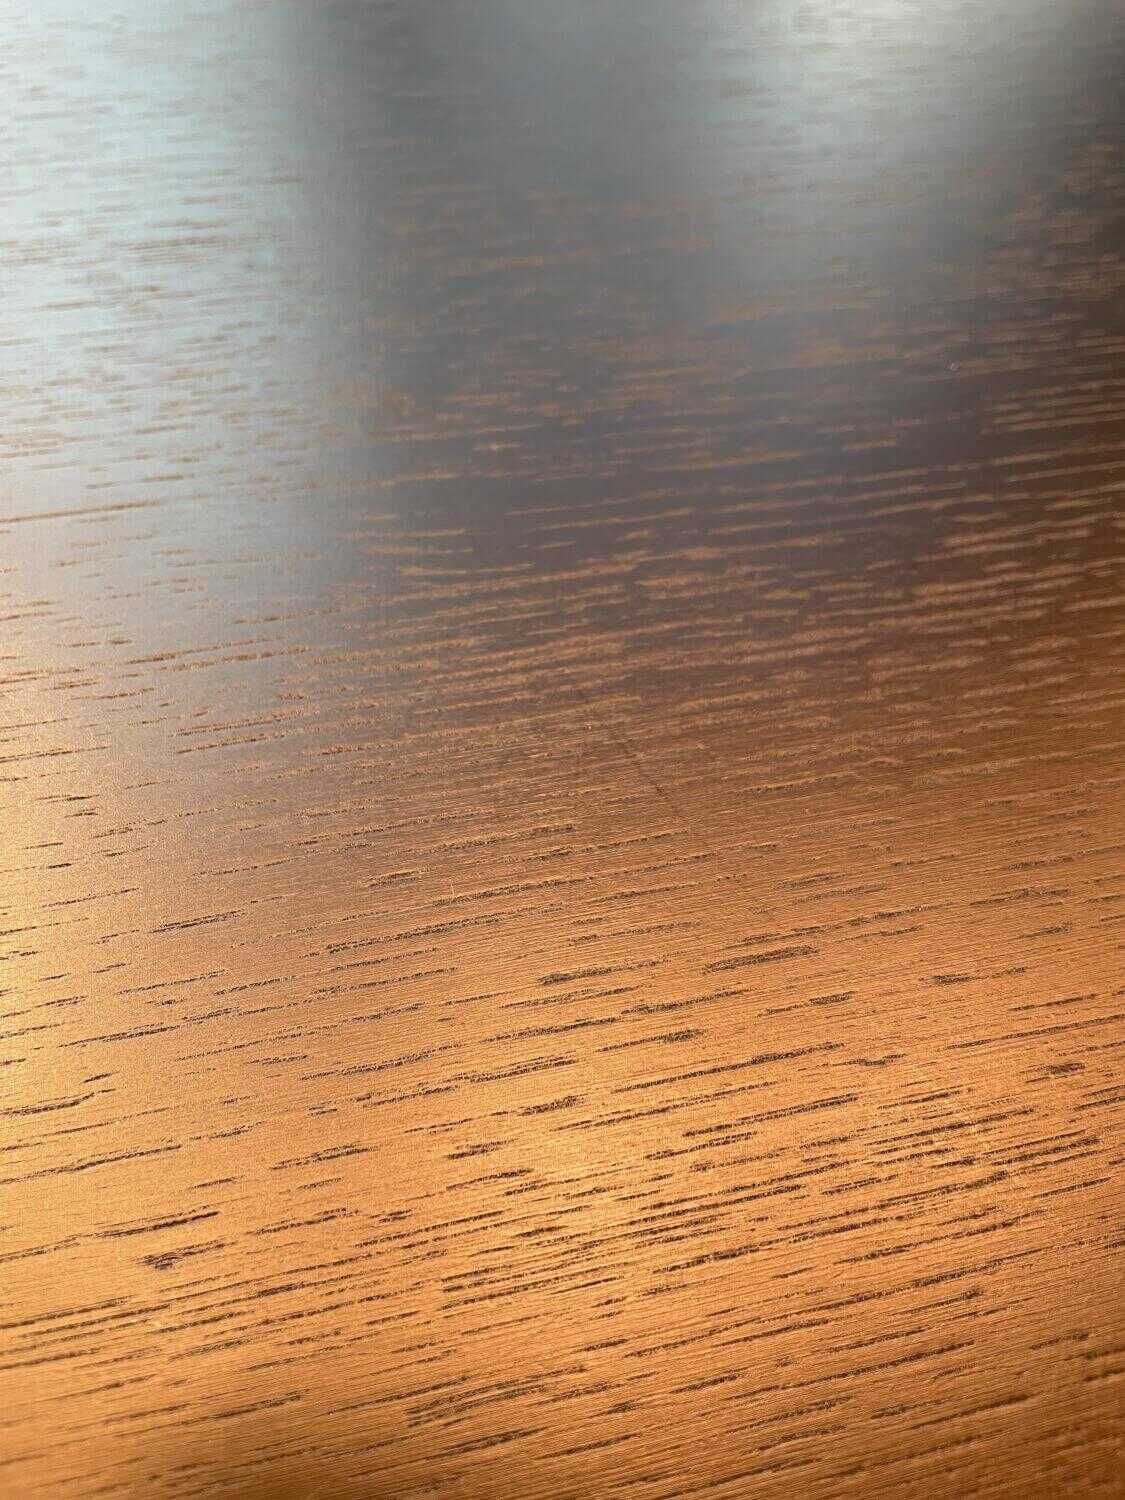 Vitra EM Table Tischplatte Eiche Furnier Gestell Pulverbeschichtet Glatt Tiefschwarz